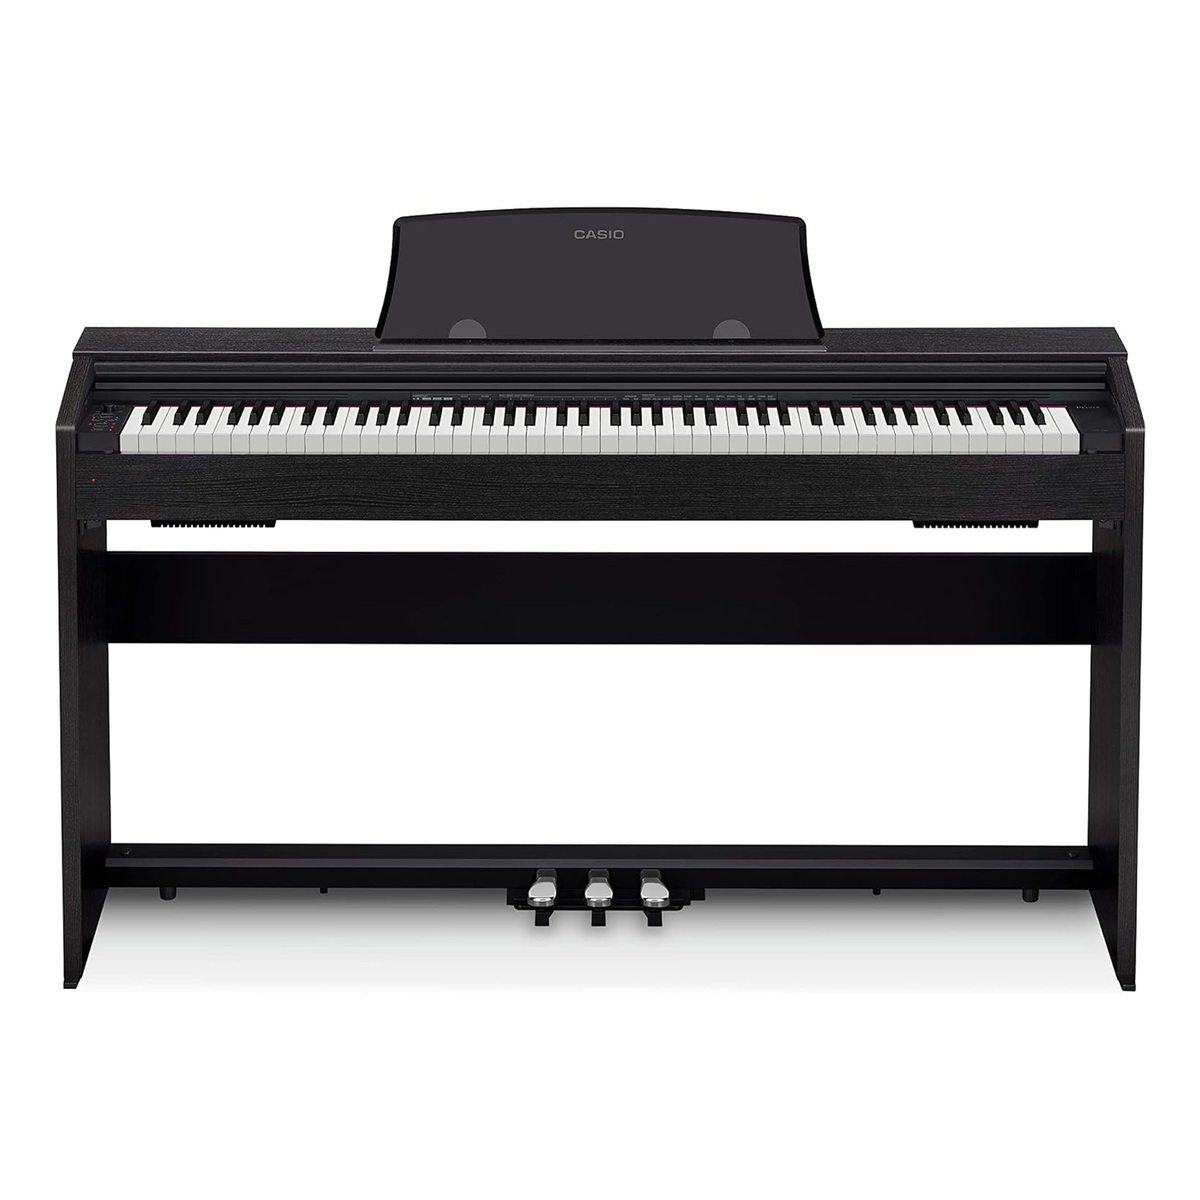 Casio Privia Digital Piano, Black, PX-770BKC2